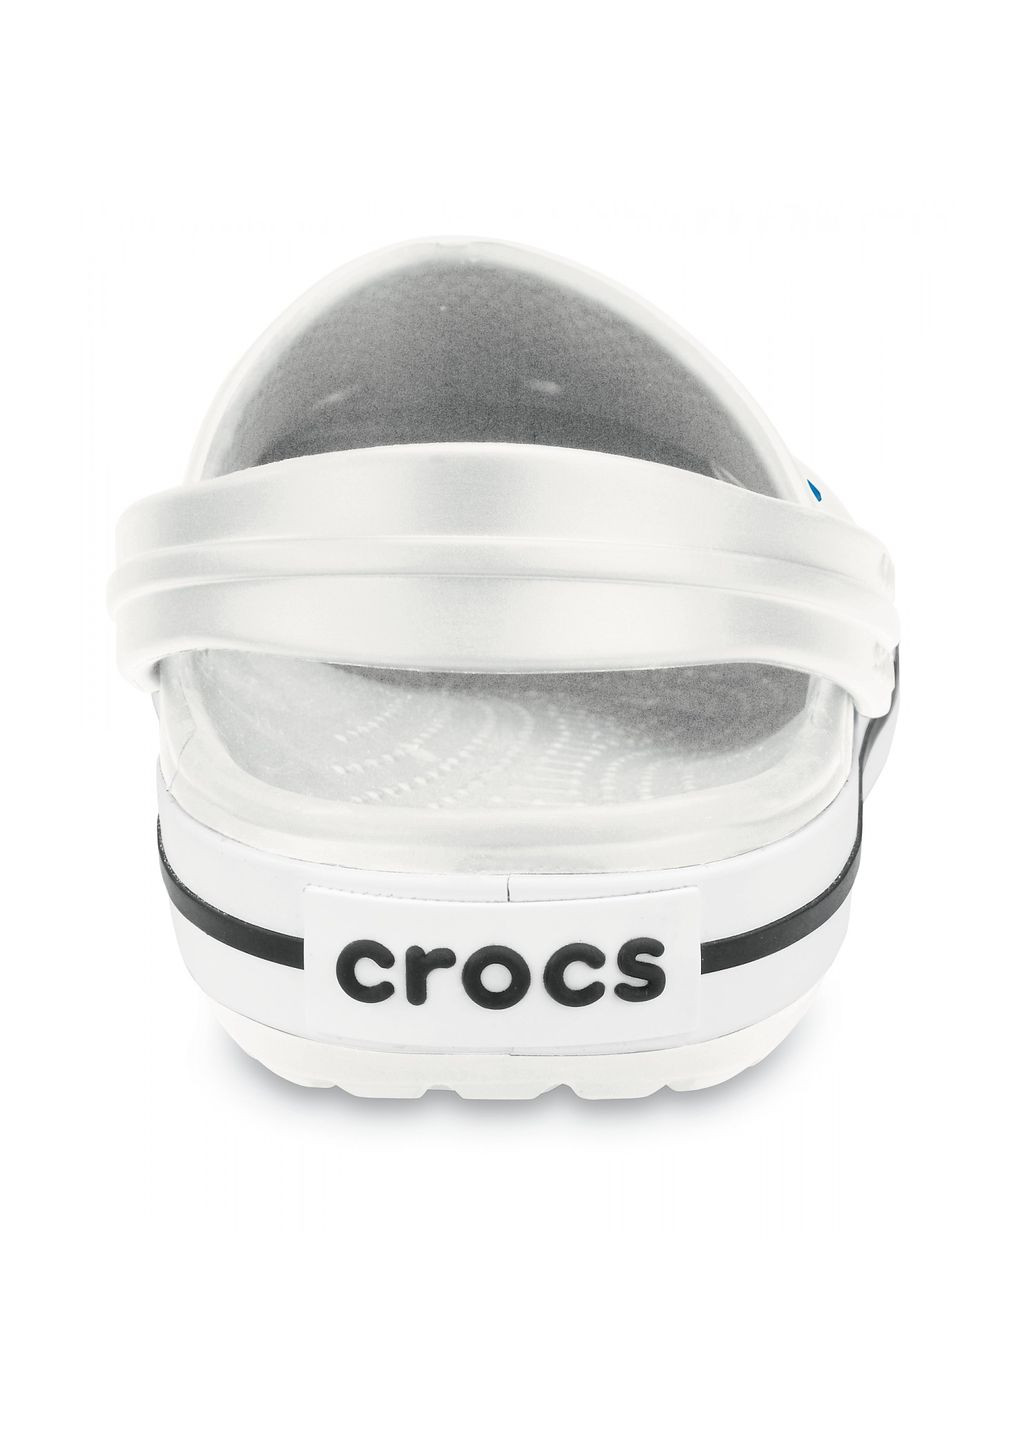 Белые сабо crocband clog white m4w6-36-23 см 11016-w Crocs